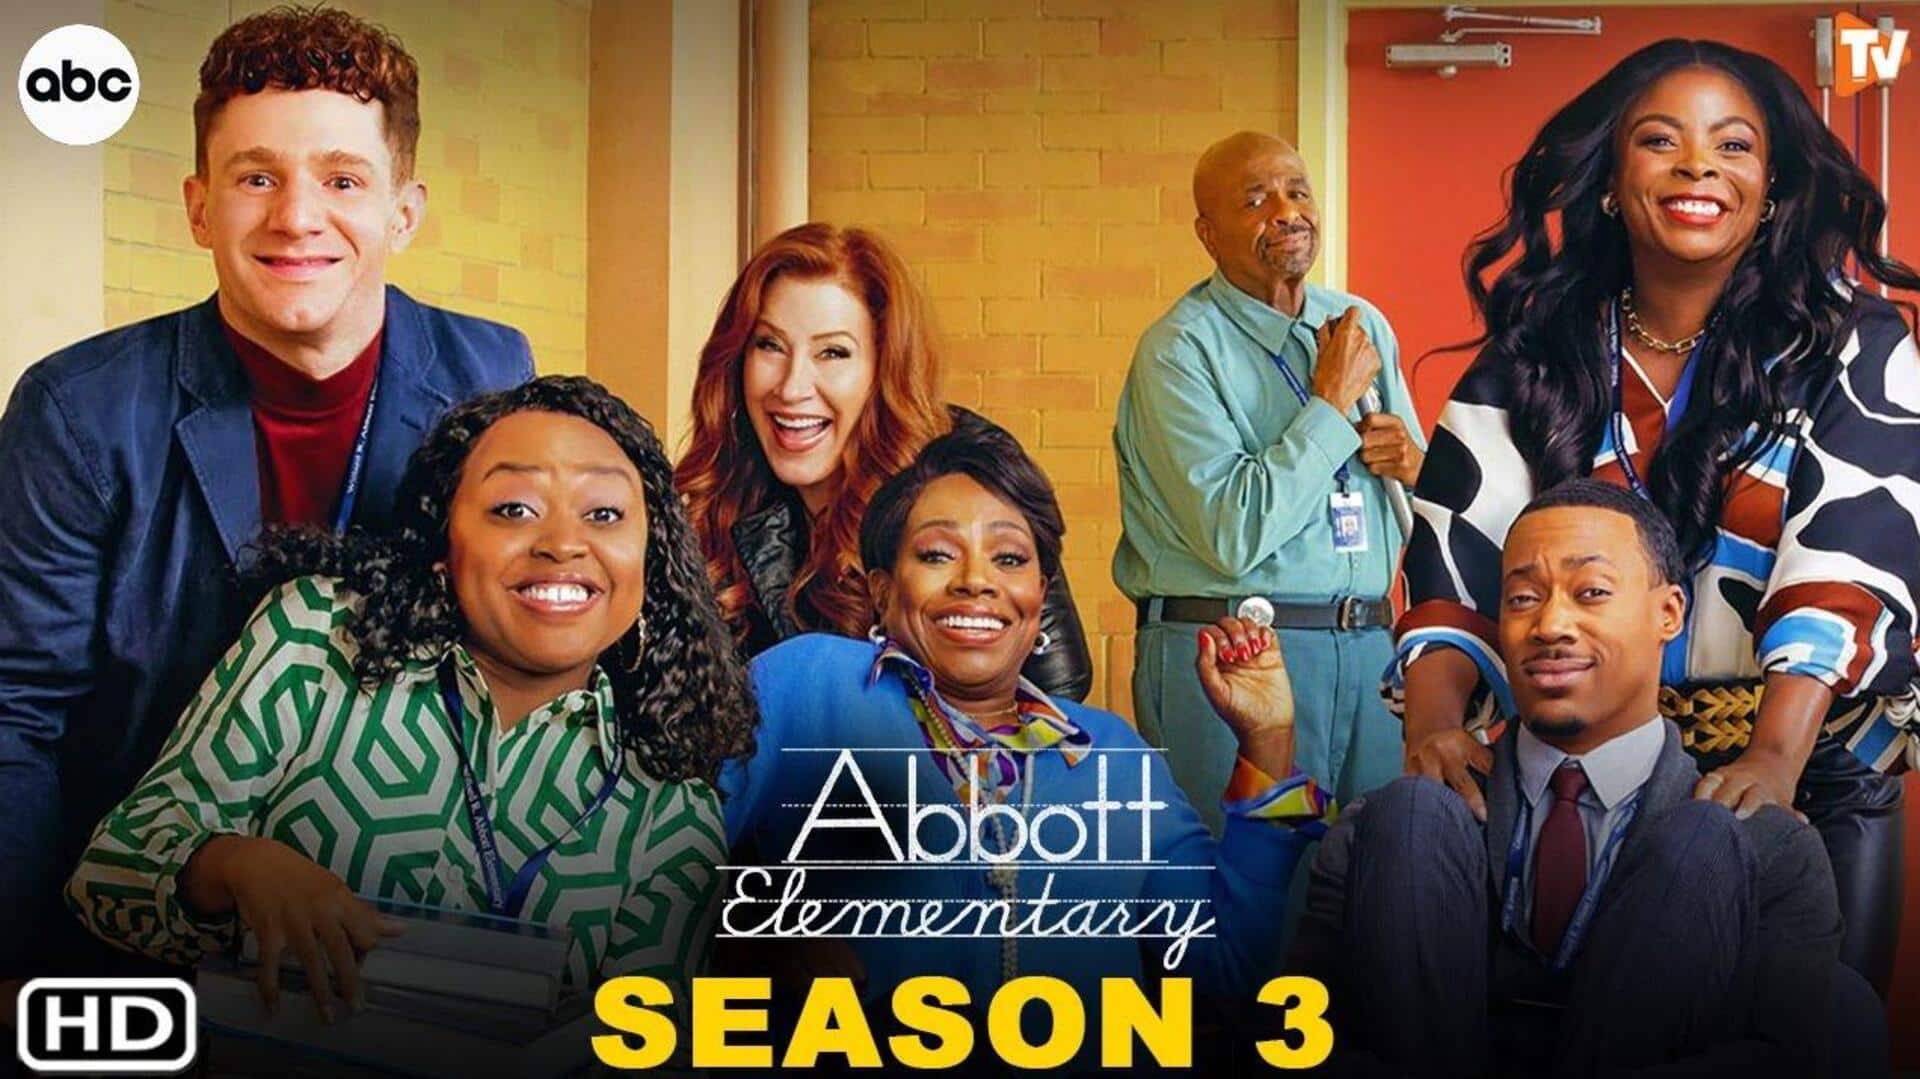 Finally! 'Abbott Elementary' S03 premiere date is here